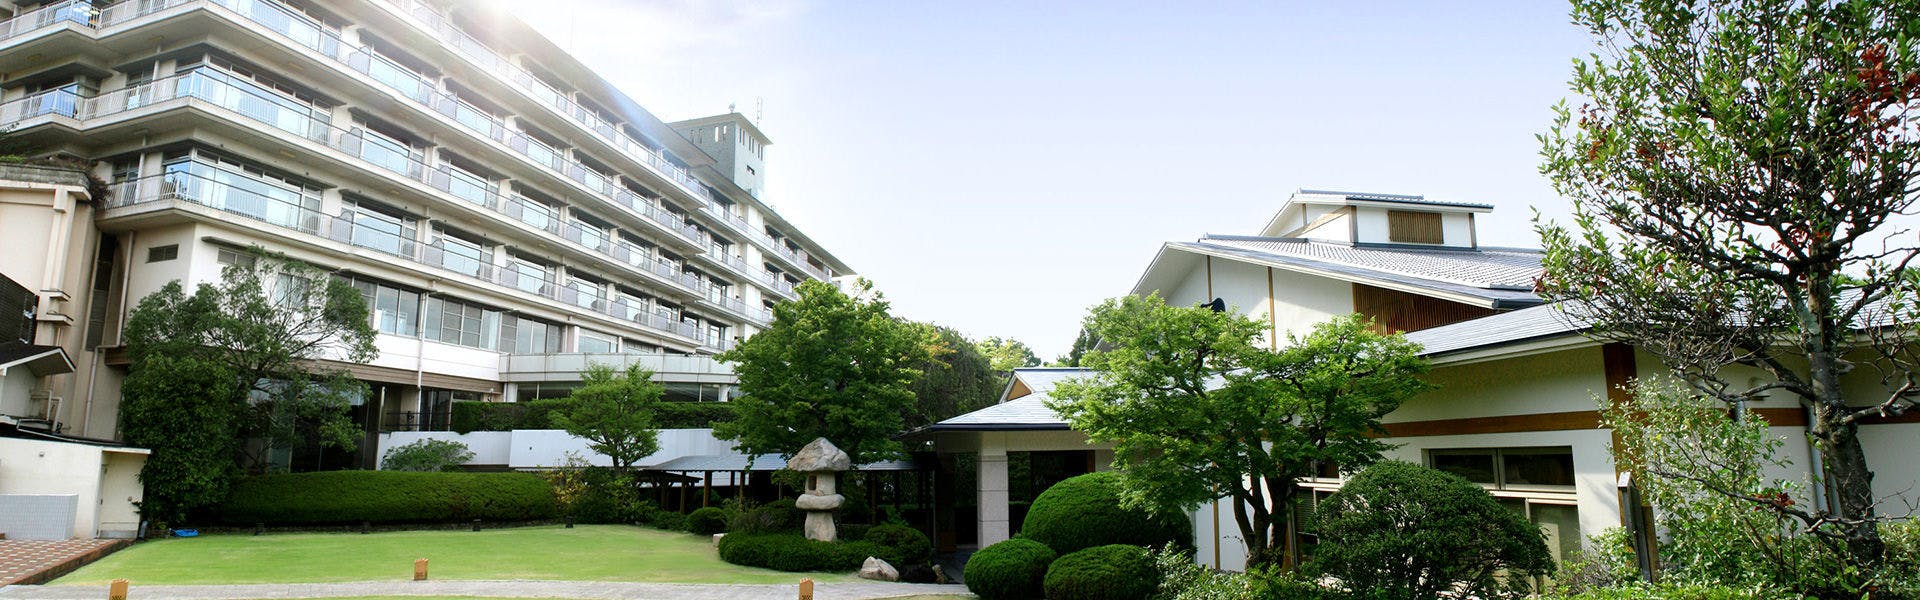 記念日におすすめのホテル・兵衛向陽閣の写真1